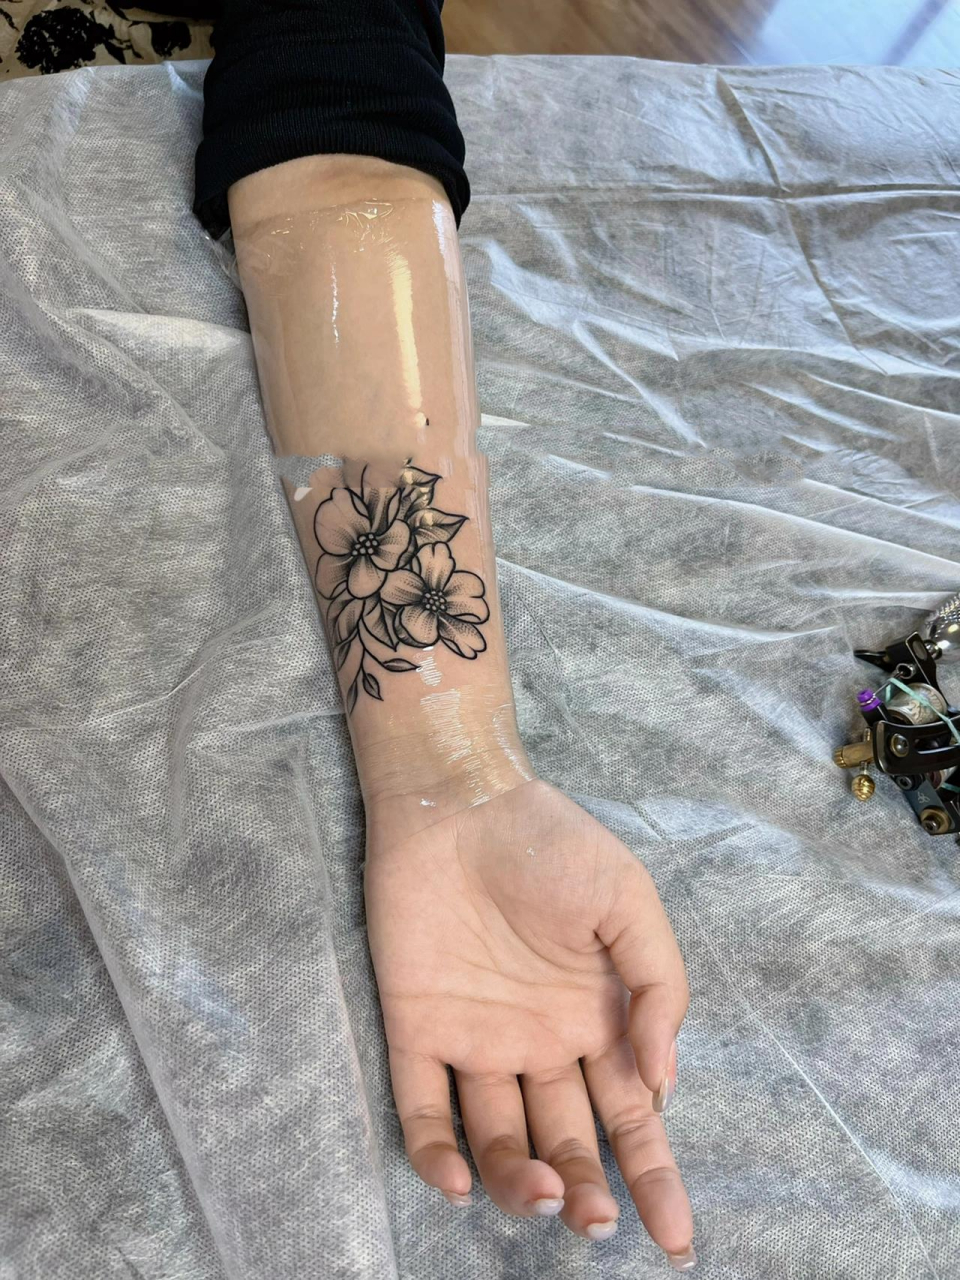 海誓山盟手腕纹身手稿图片